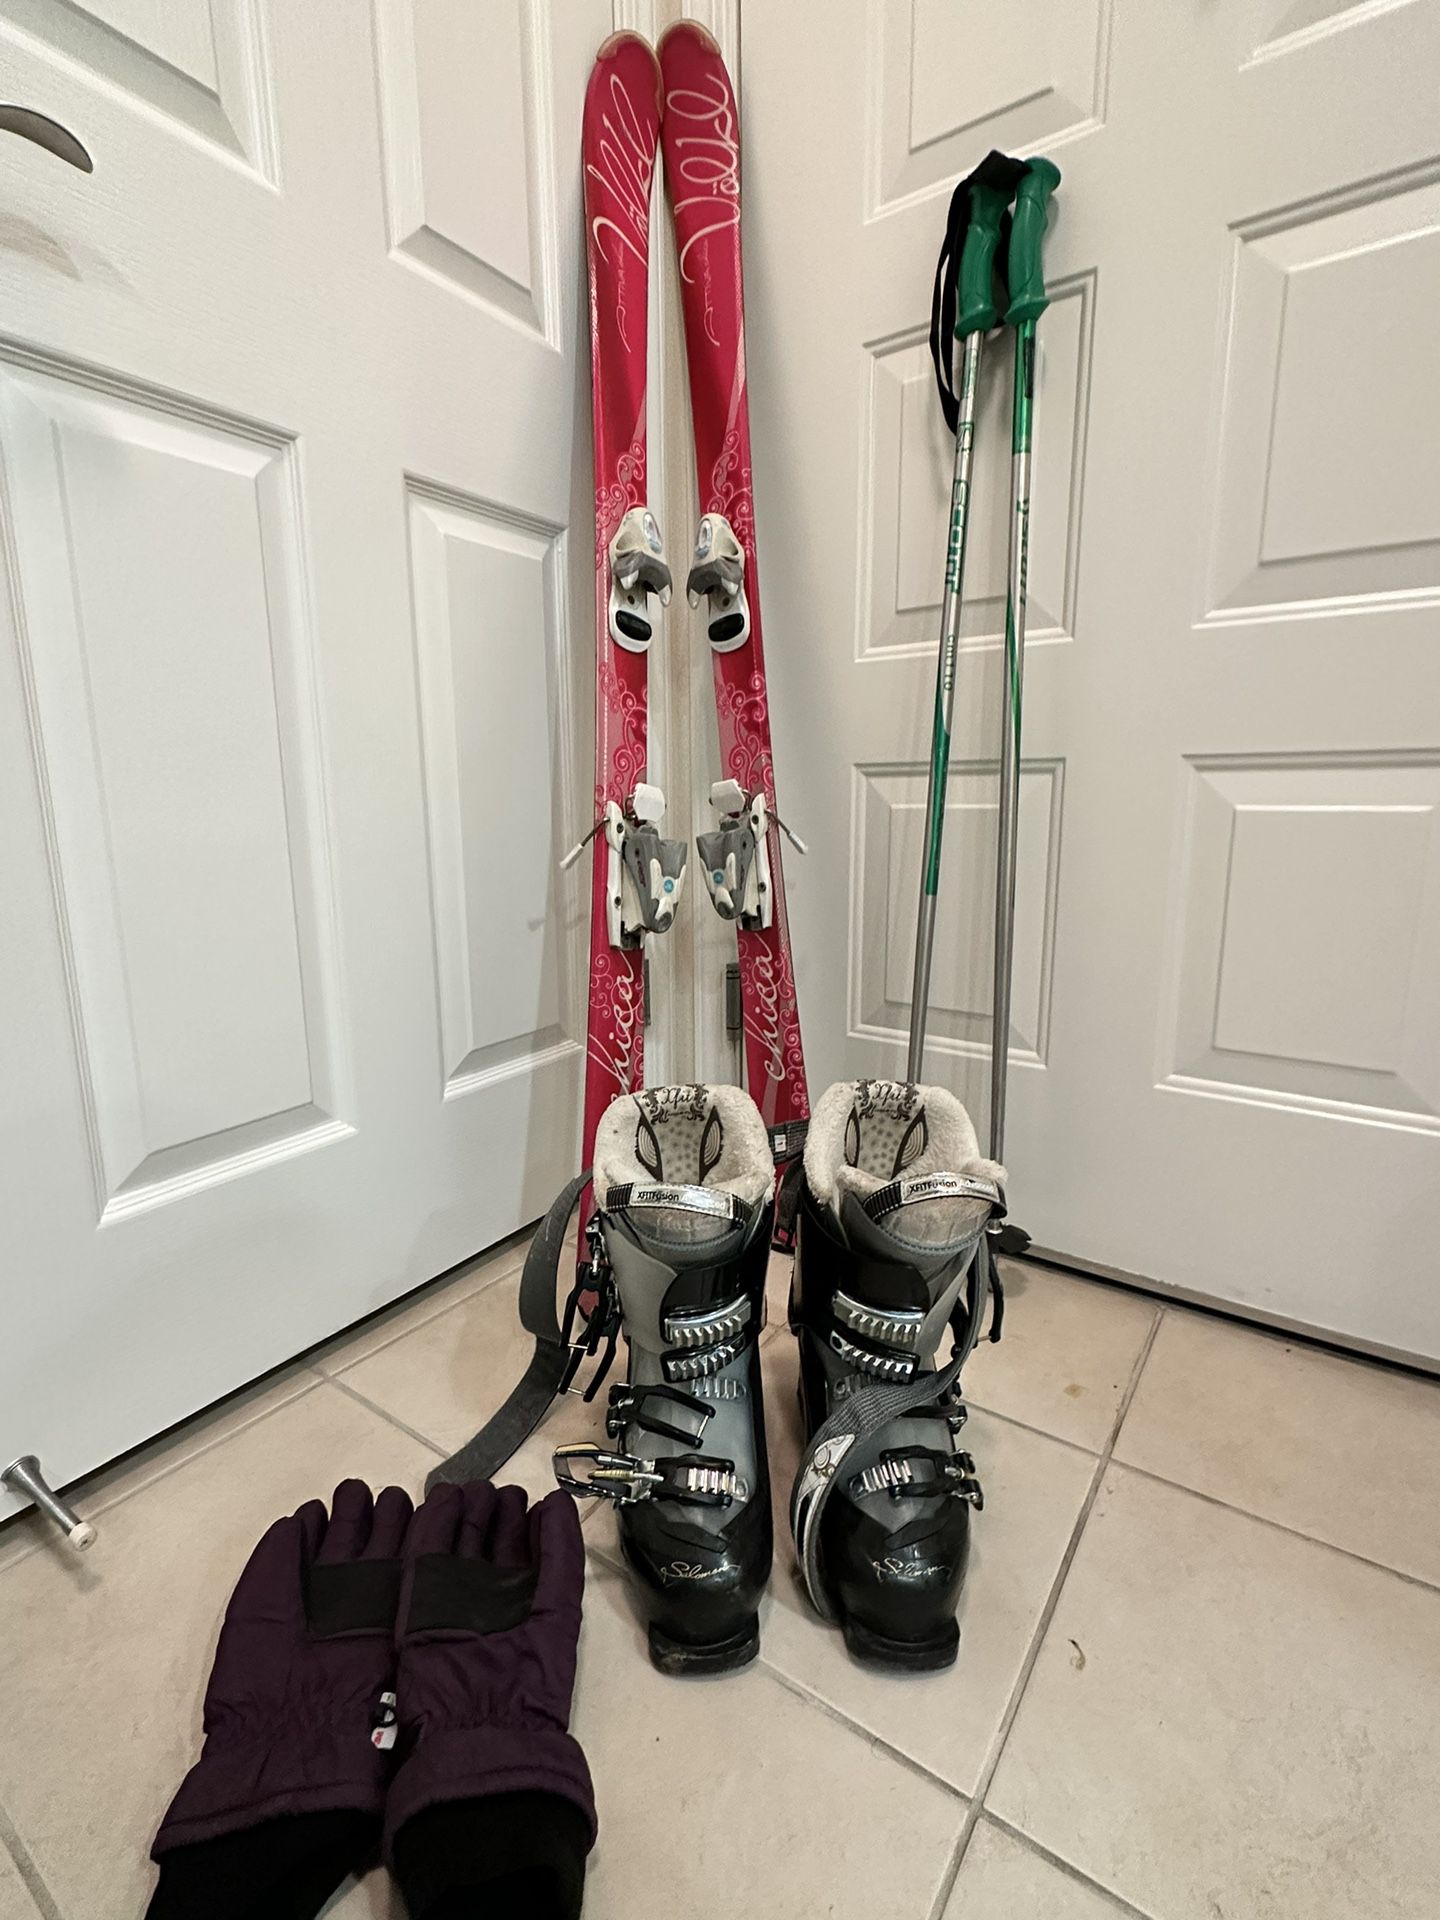 Skis 120cm + Boots Size 24 + Poles + Gloves Bundle